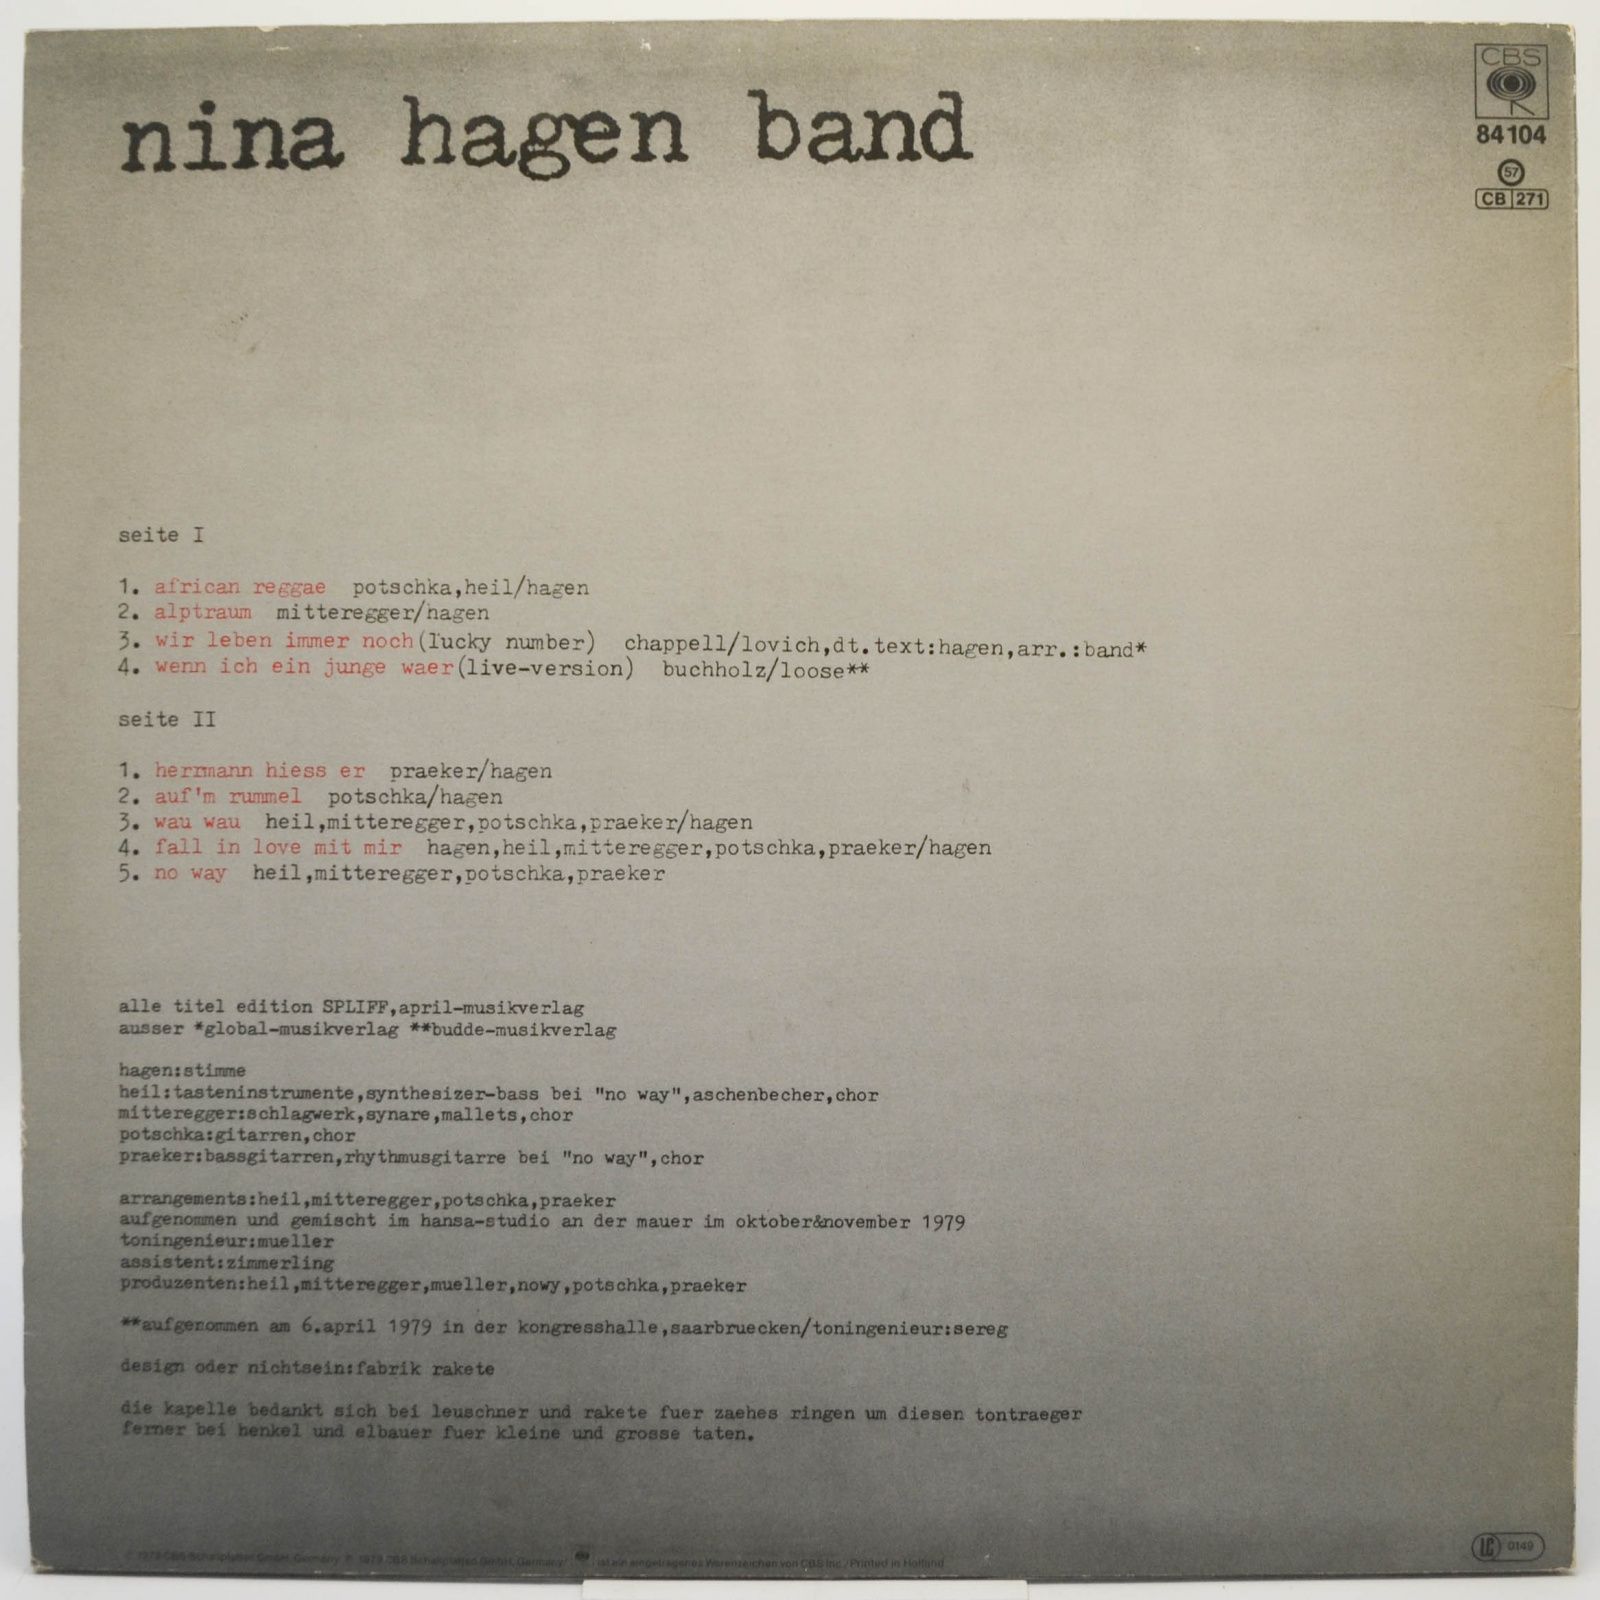 Nina Hagen Band — Unbehagen, 1979